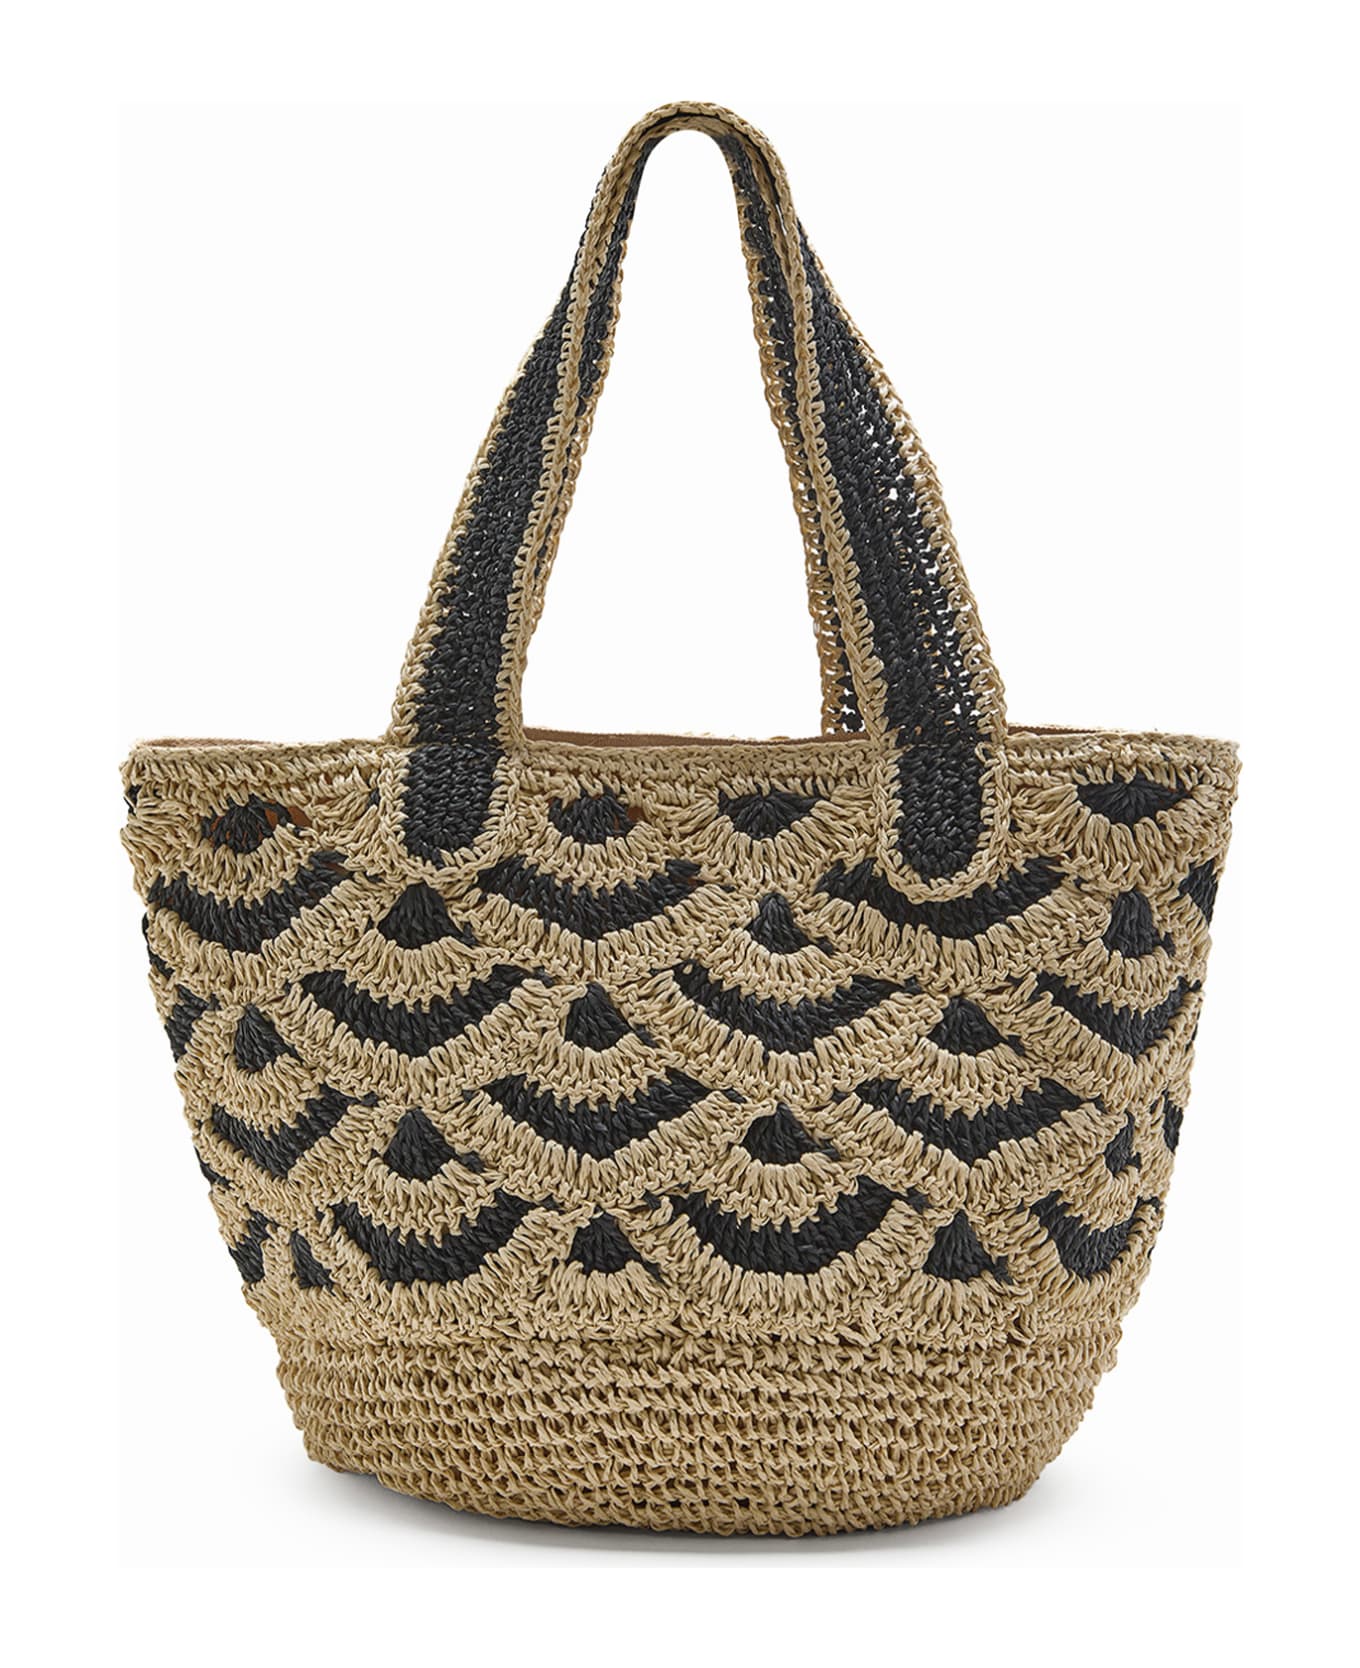 Malìparmi Shopping Bag In Hand-woven Two-tone Raffia - BEIGE/NERO